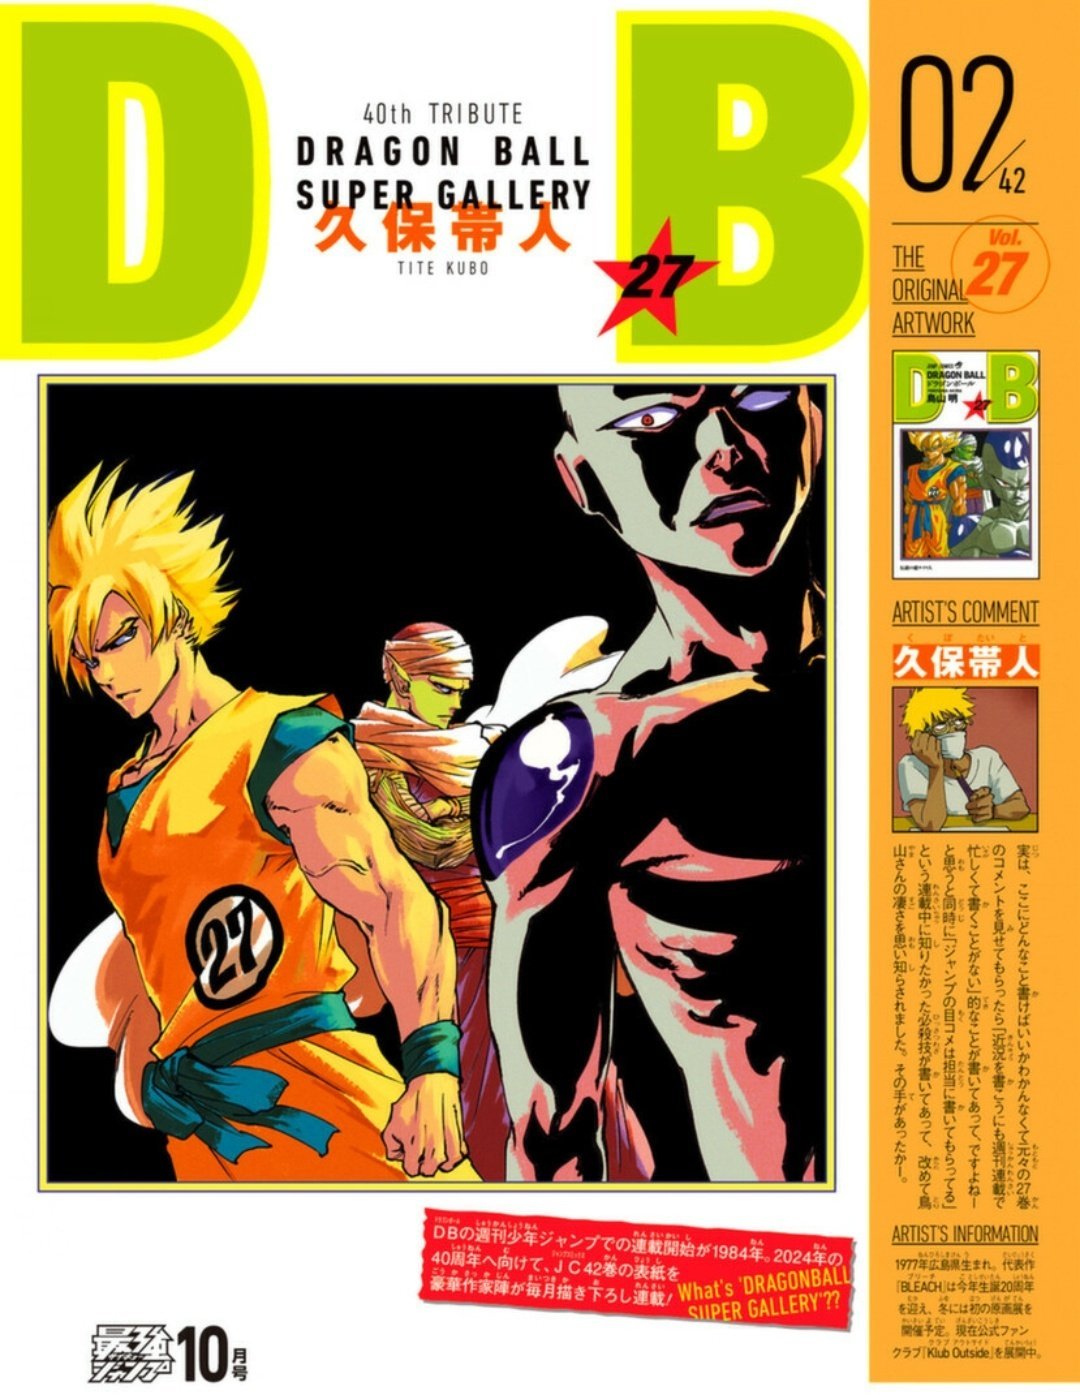 Criador de Bleach reimaginou uma das capas do mangá de Dragon Ball